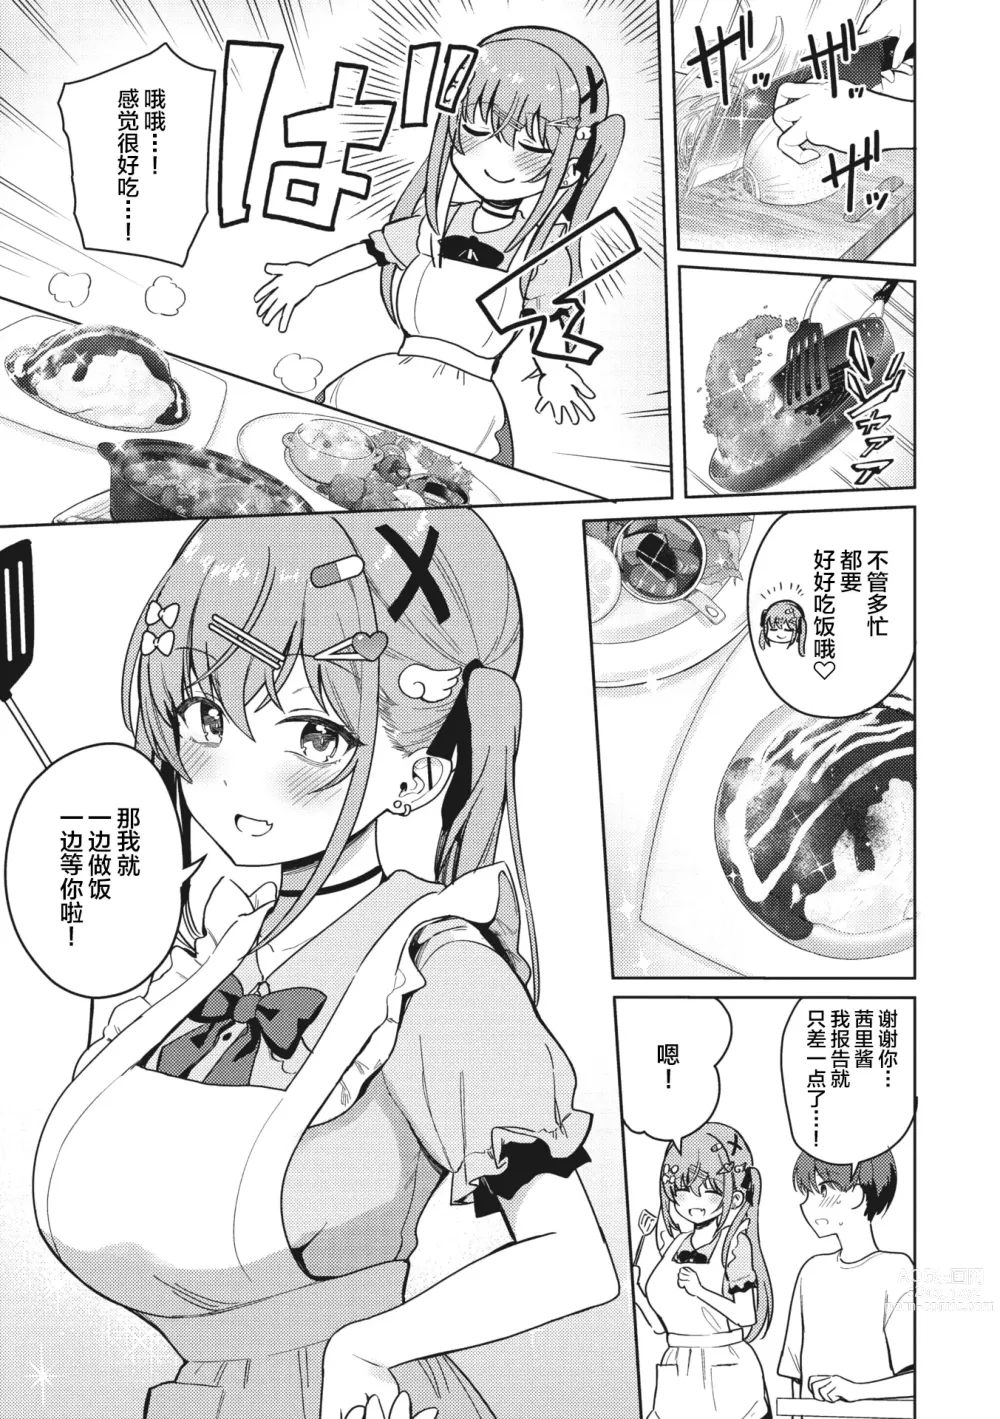 Page 9 of manga Motto! Best Match Mine Girl